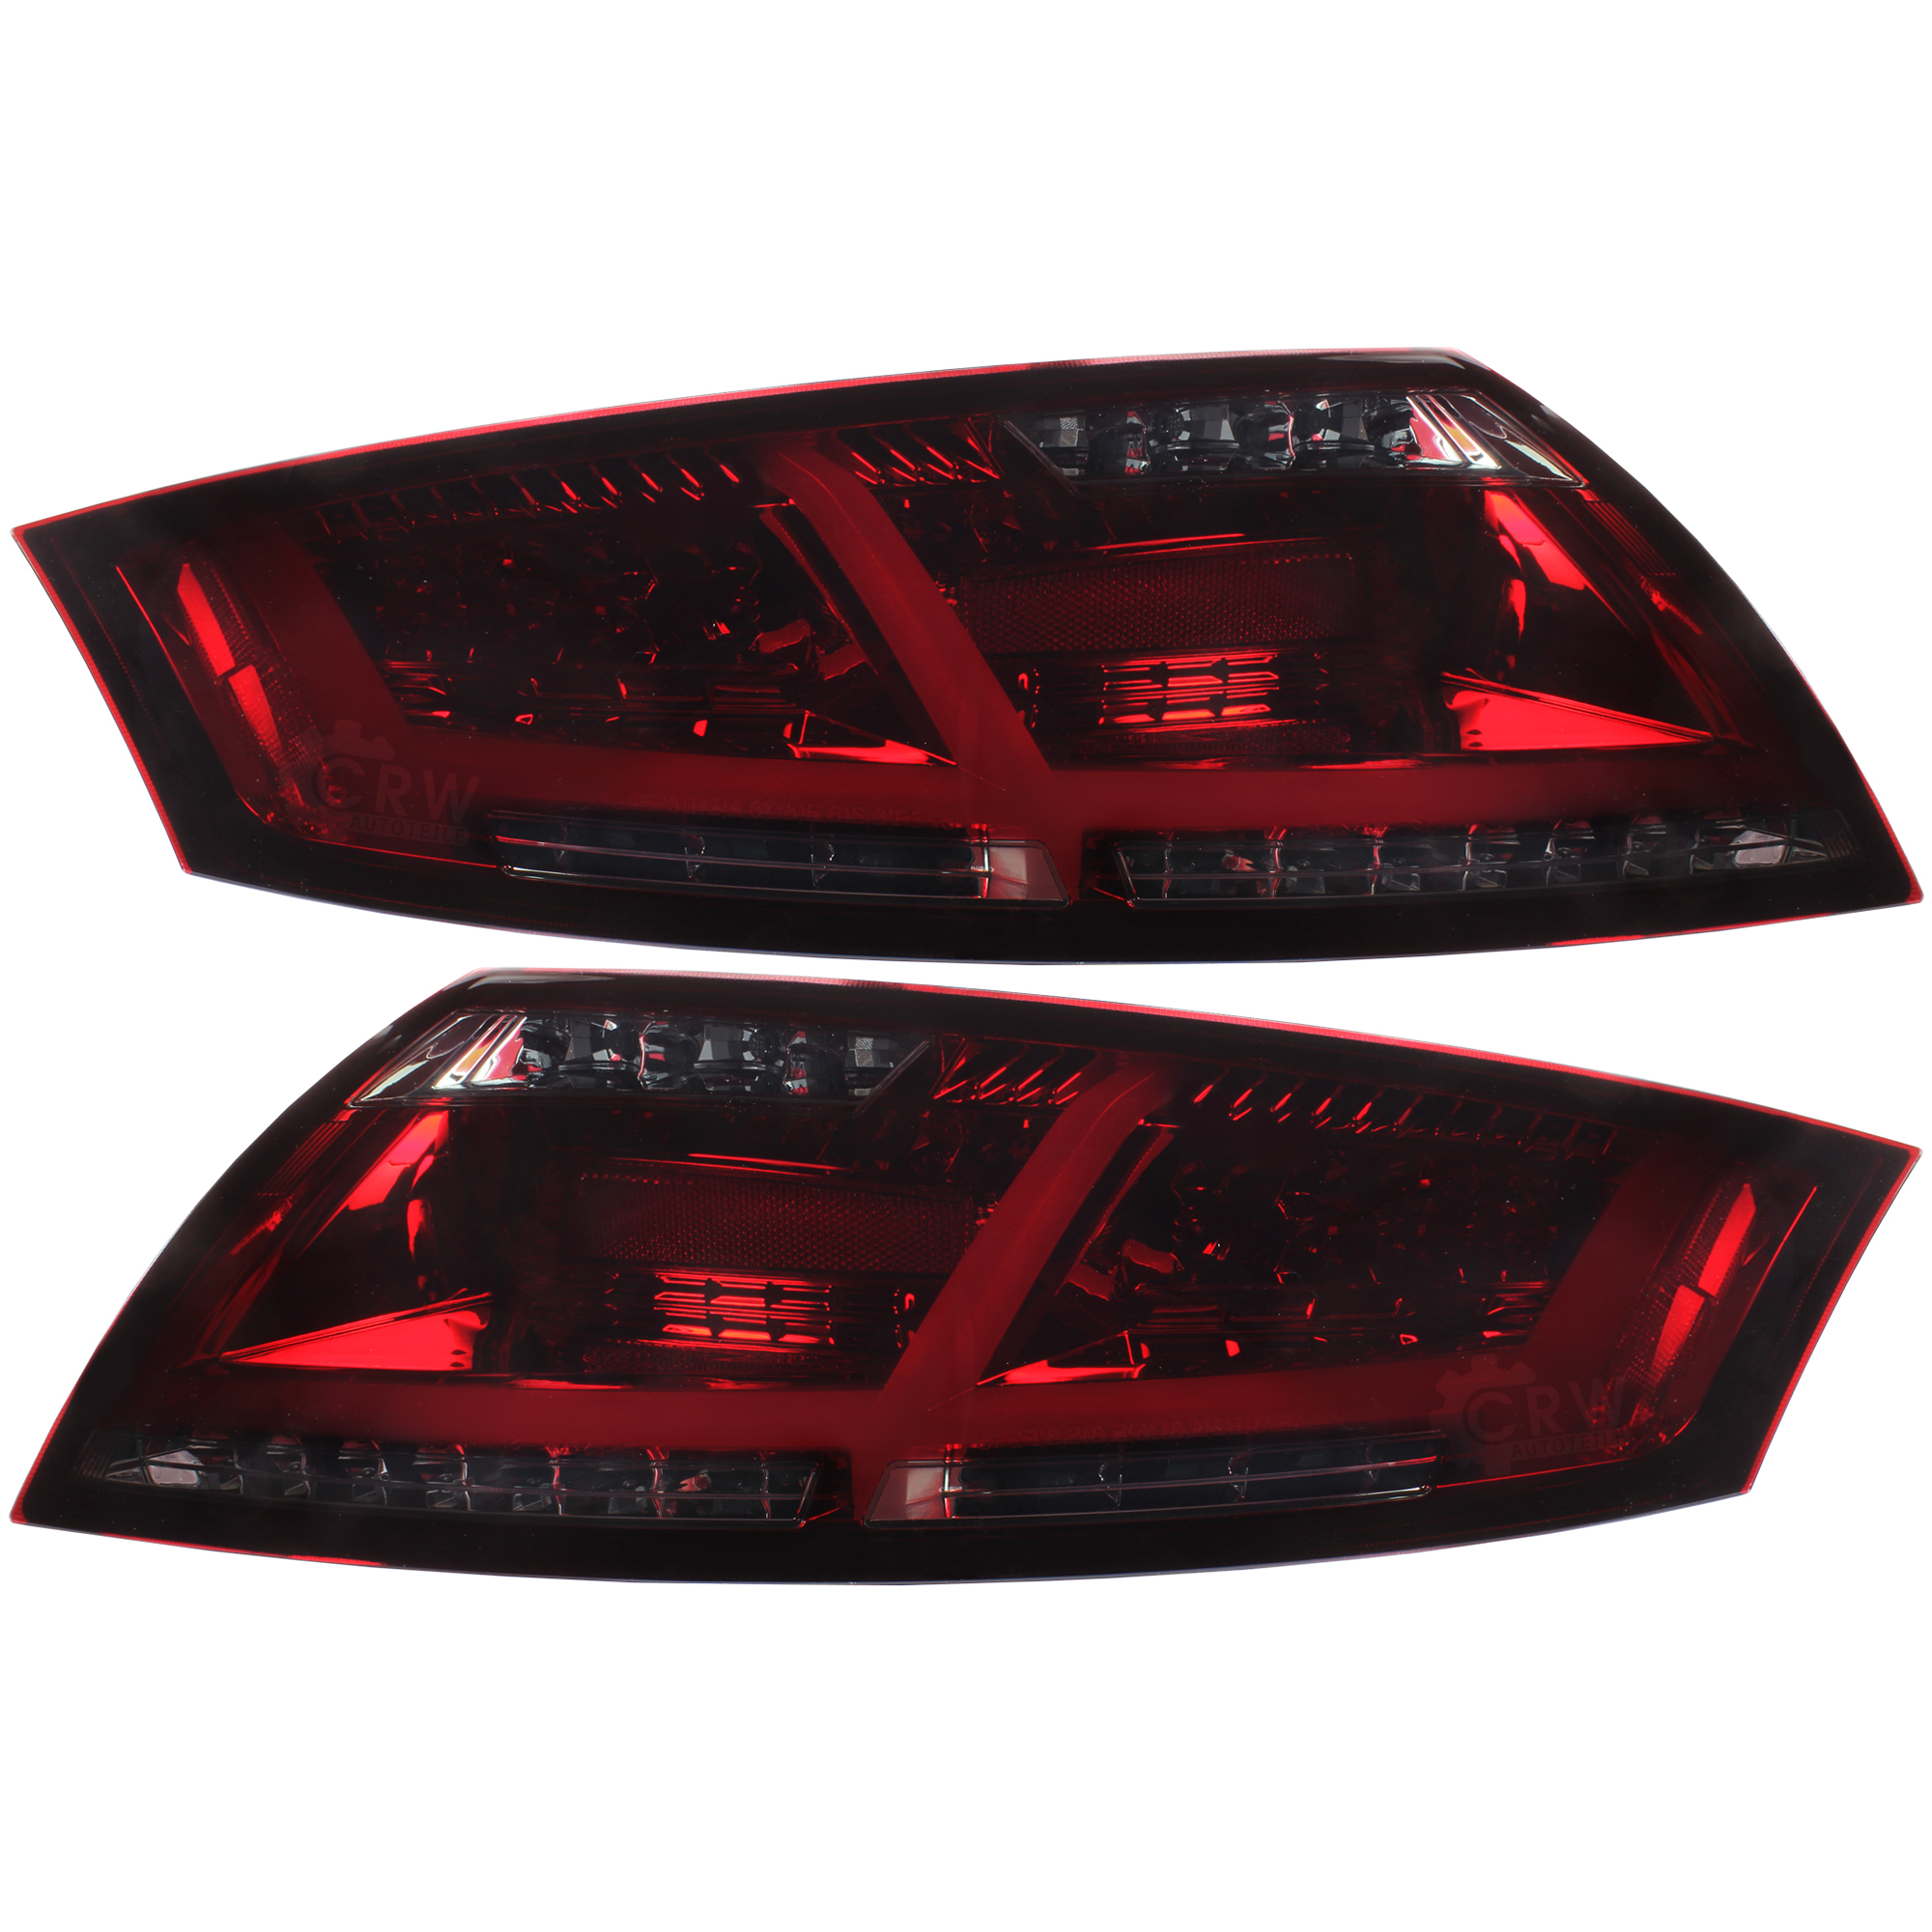 LED Lightbar Rückleuchten für Audi TT 8J Bj. 06-14 rot schwarz inkl. Blinker